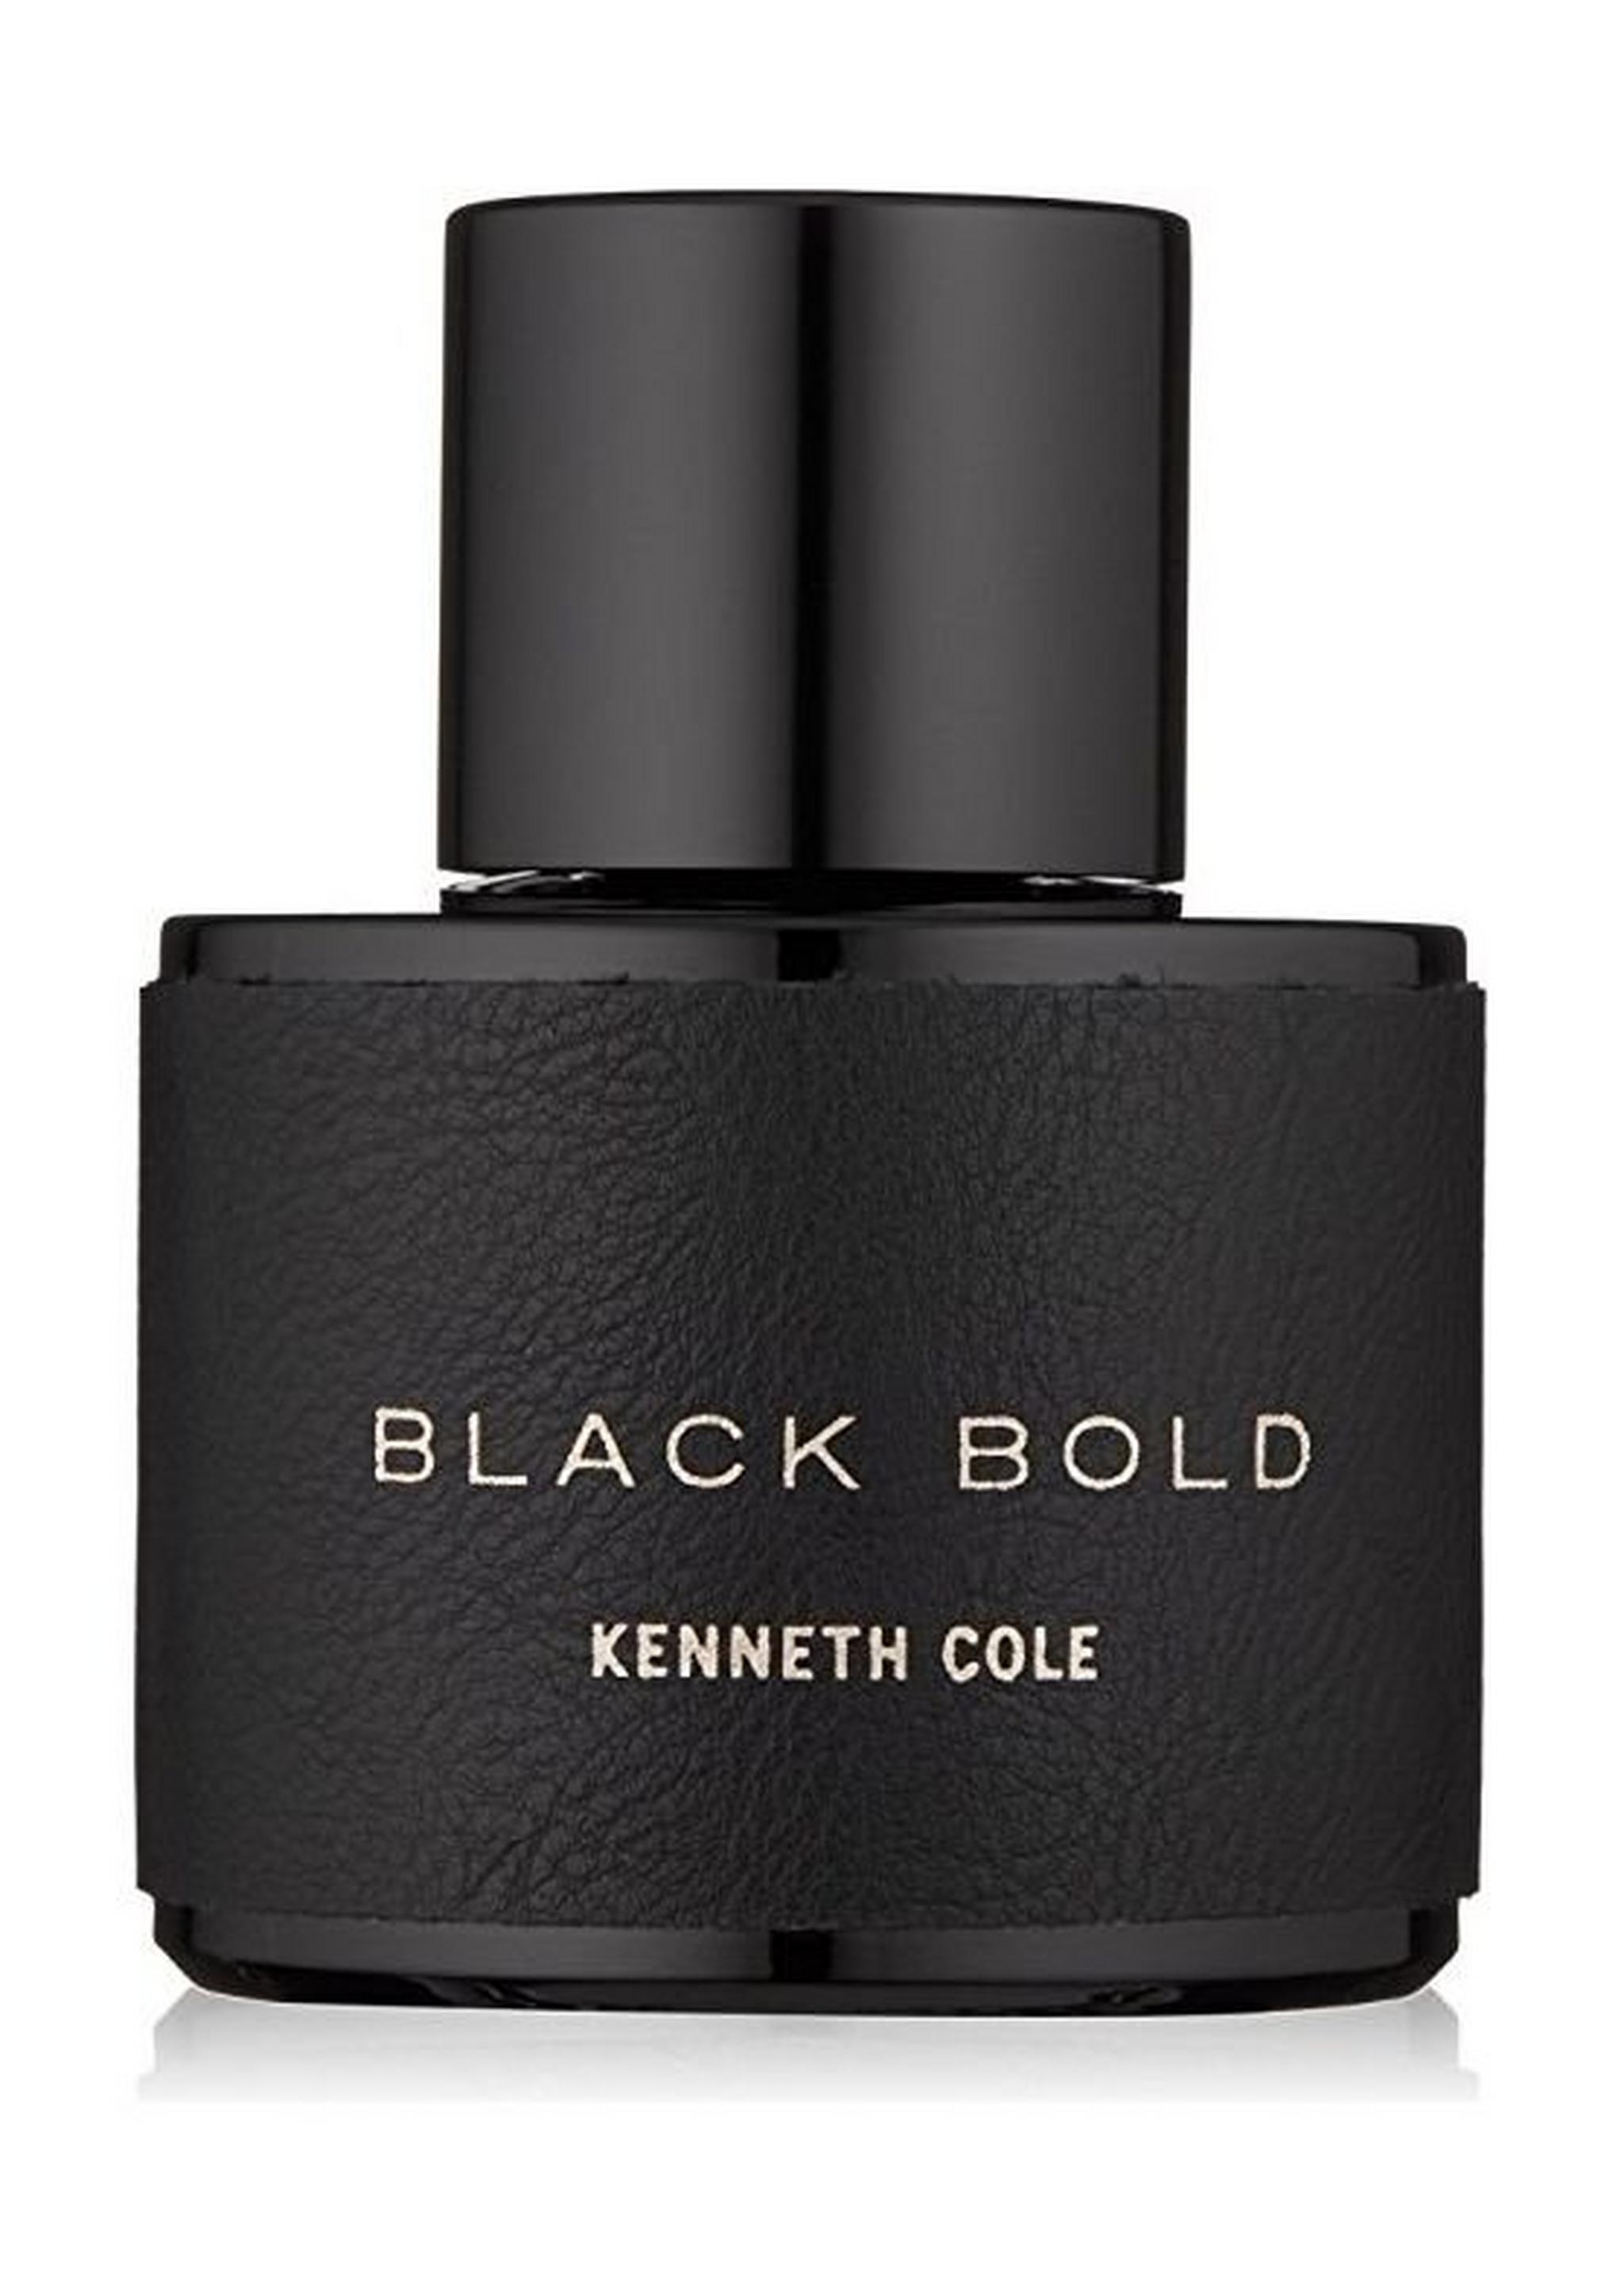 Black Bold by Kenneth Cole For Men 100ml Eau de Parfum